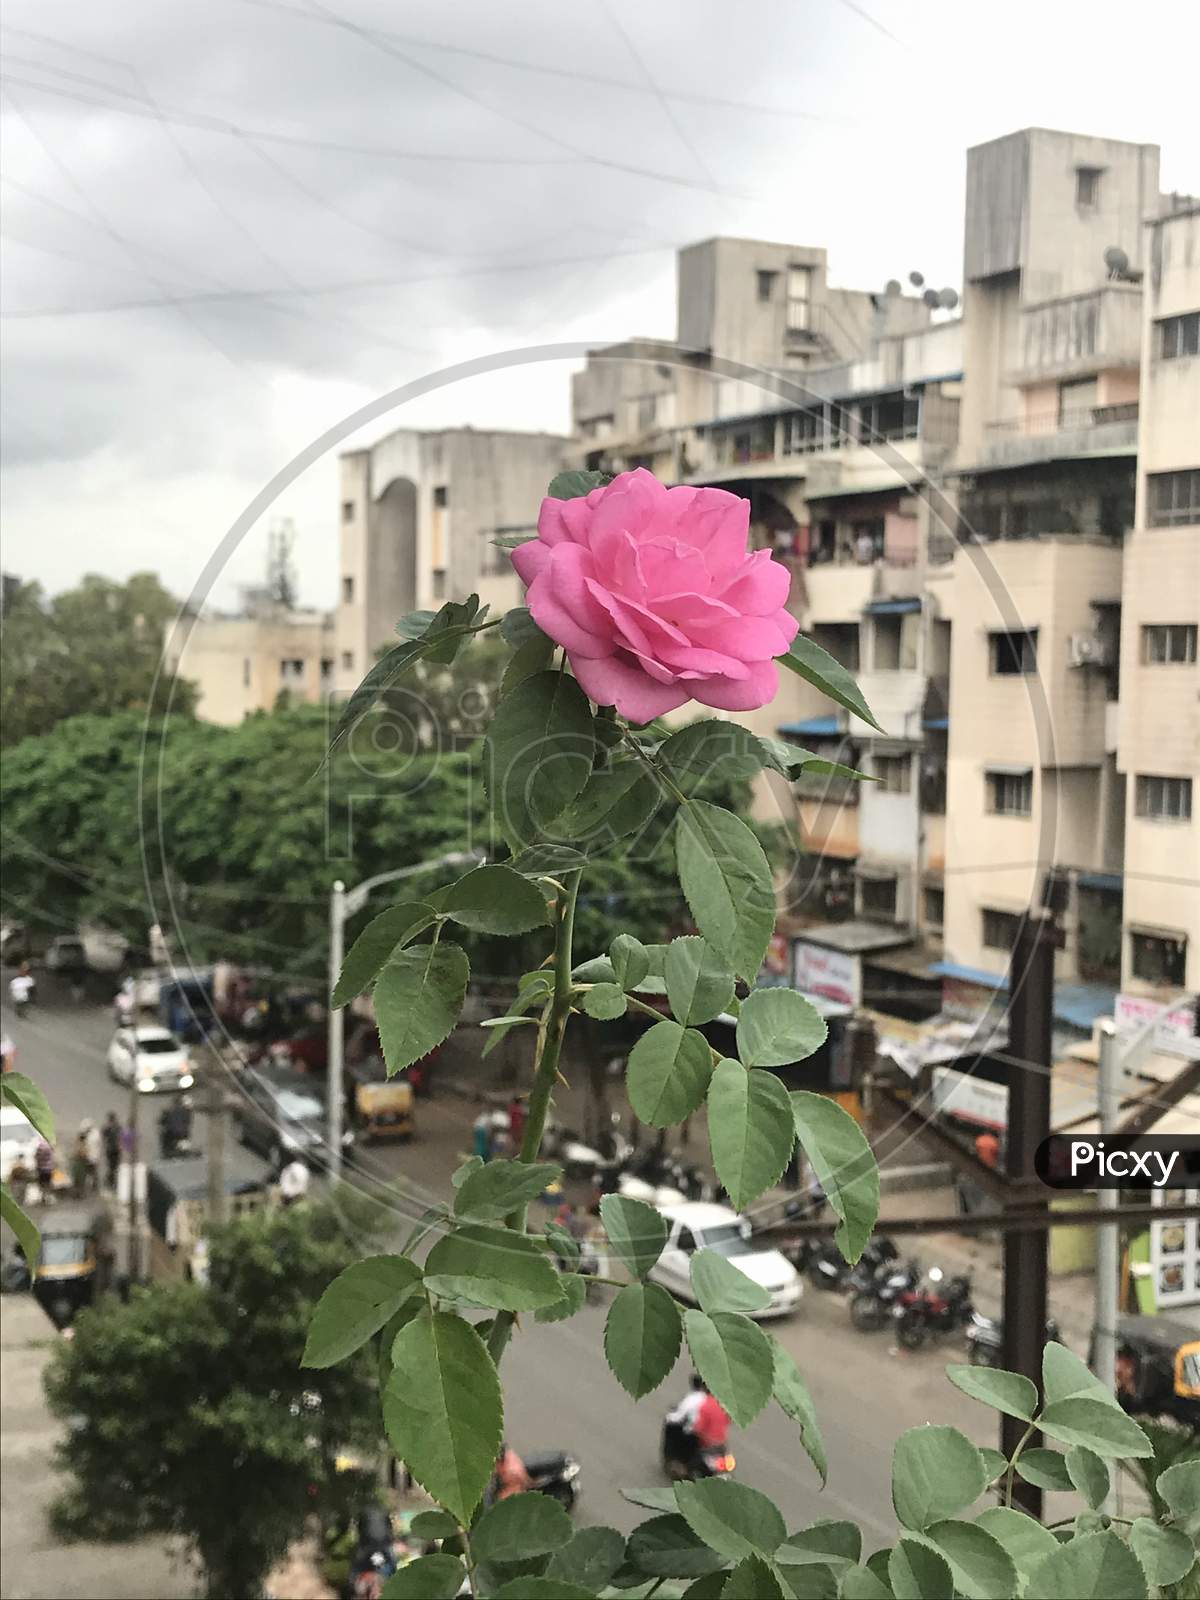 Pink as this rose